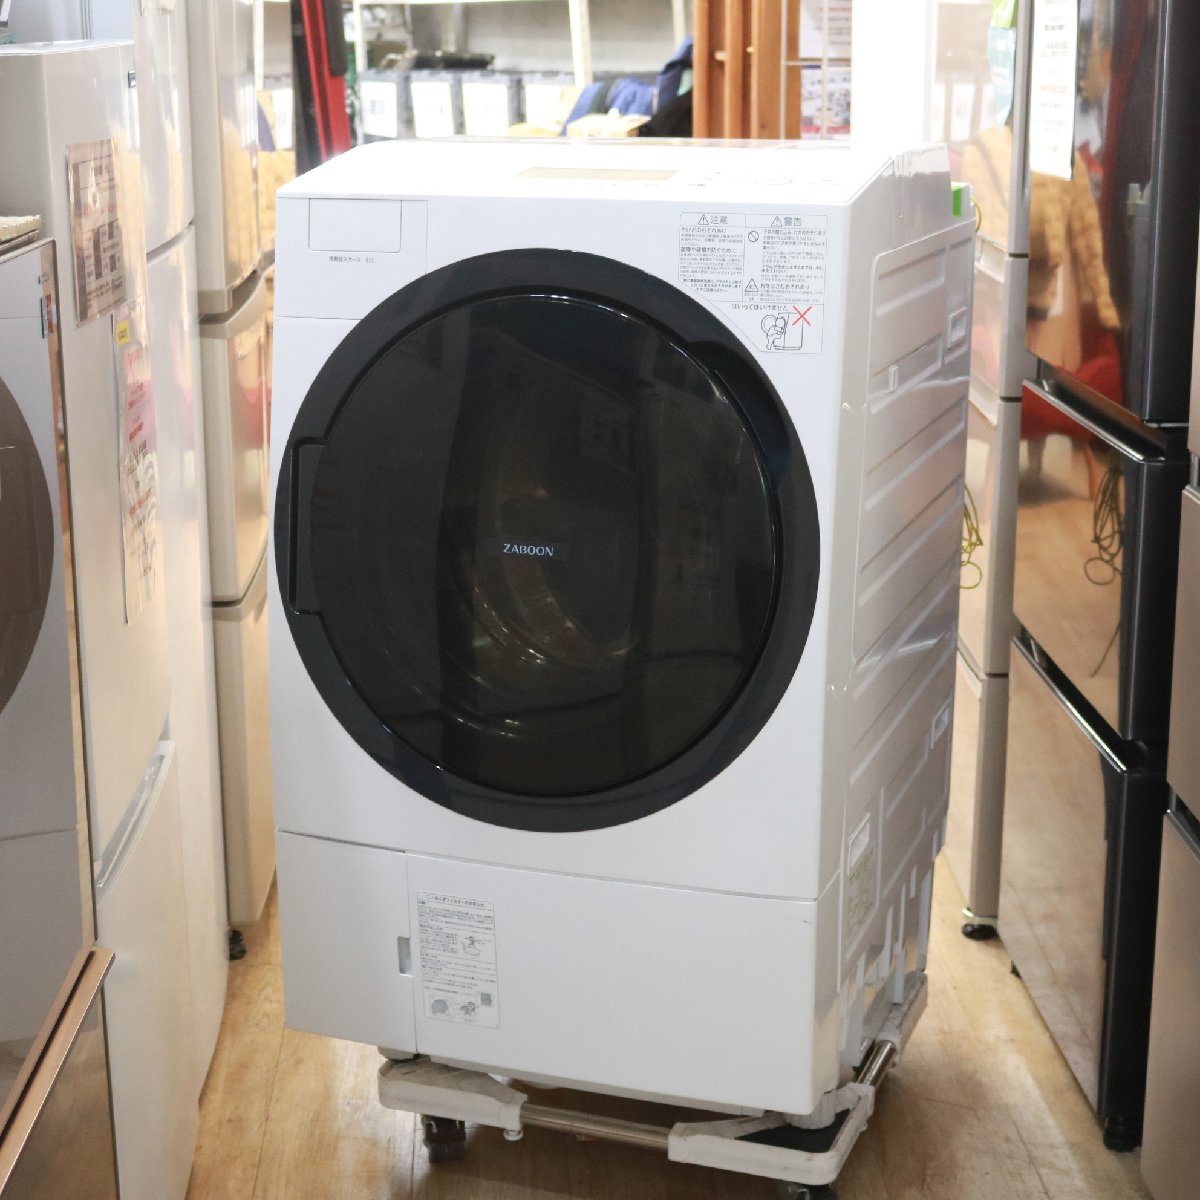 東京都練馬区にて 東芝 ドラム式洗濯乾燥機 TW-117A8L 2020年製 を出張買取させて頂きました。